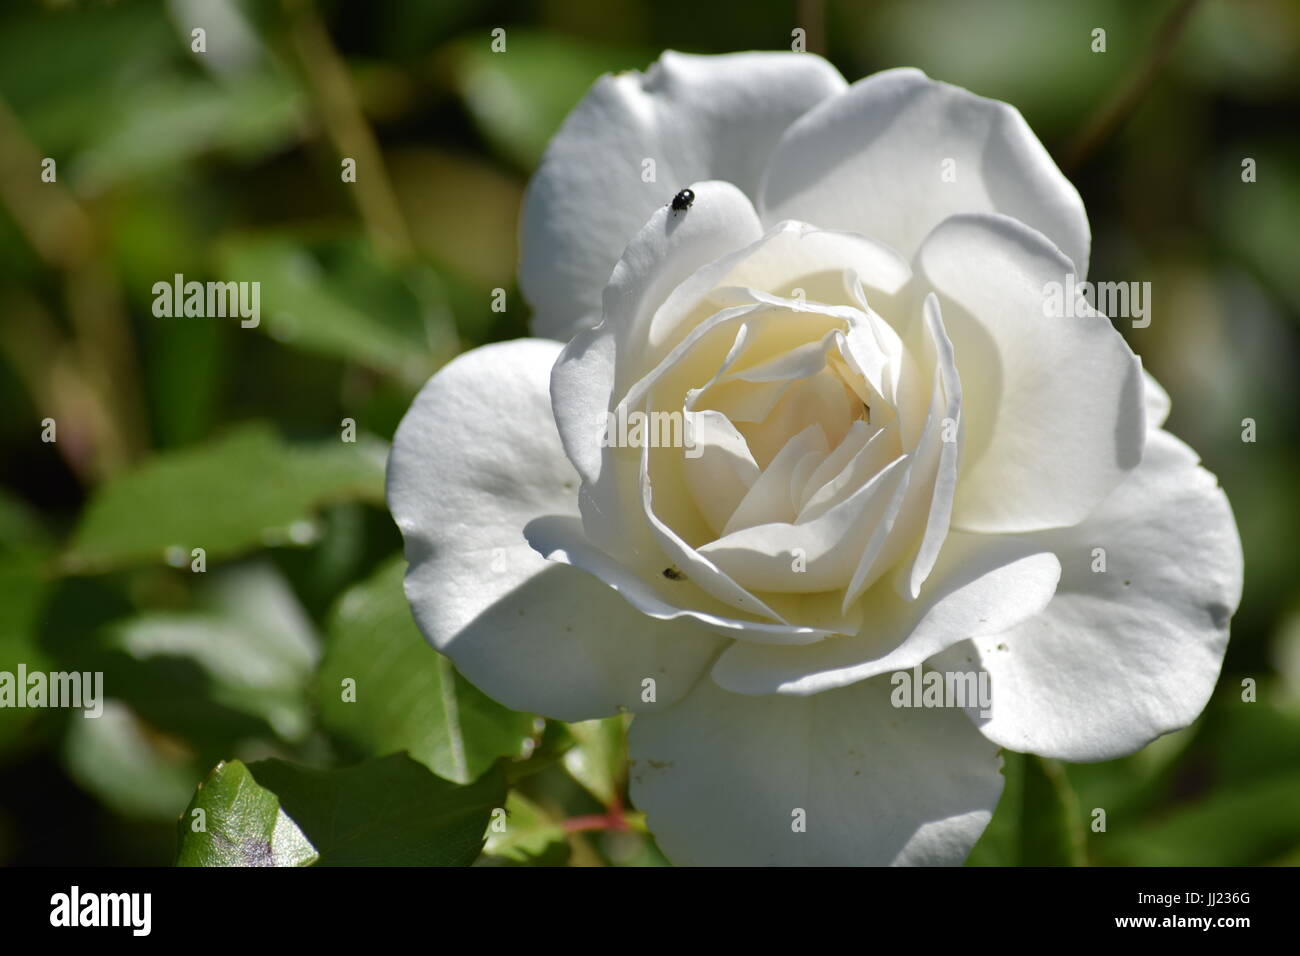 White tea rose Stock Photo